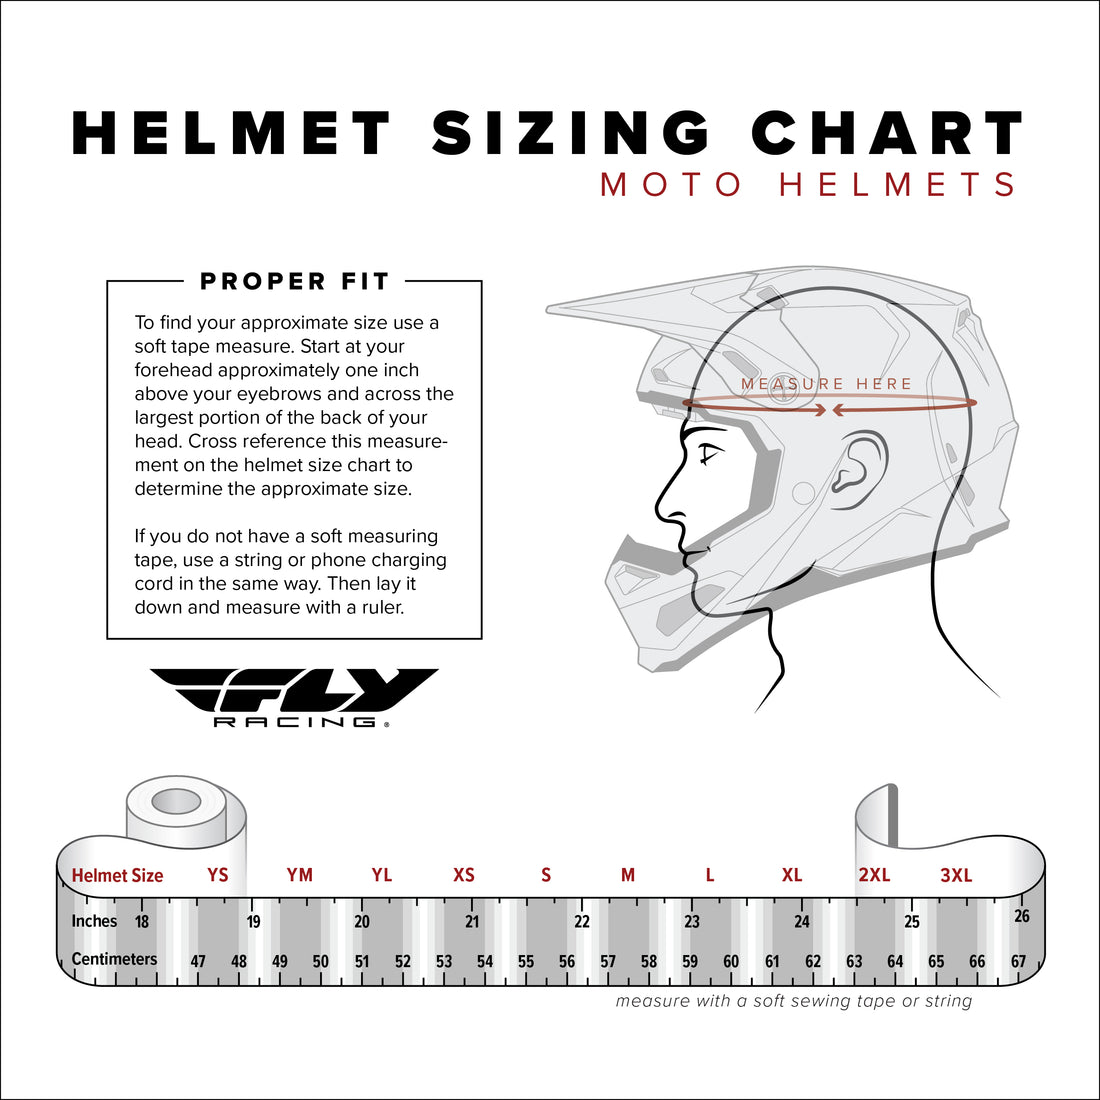 Fly Racing Kinetic SE Kryptek Helmet 2024 [Closeout]